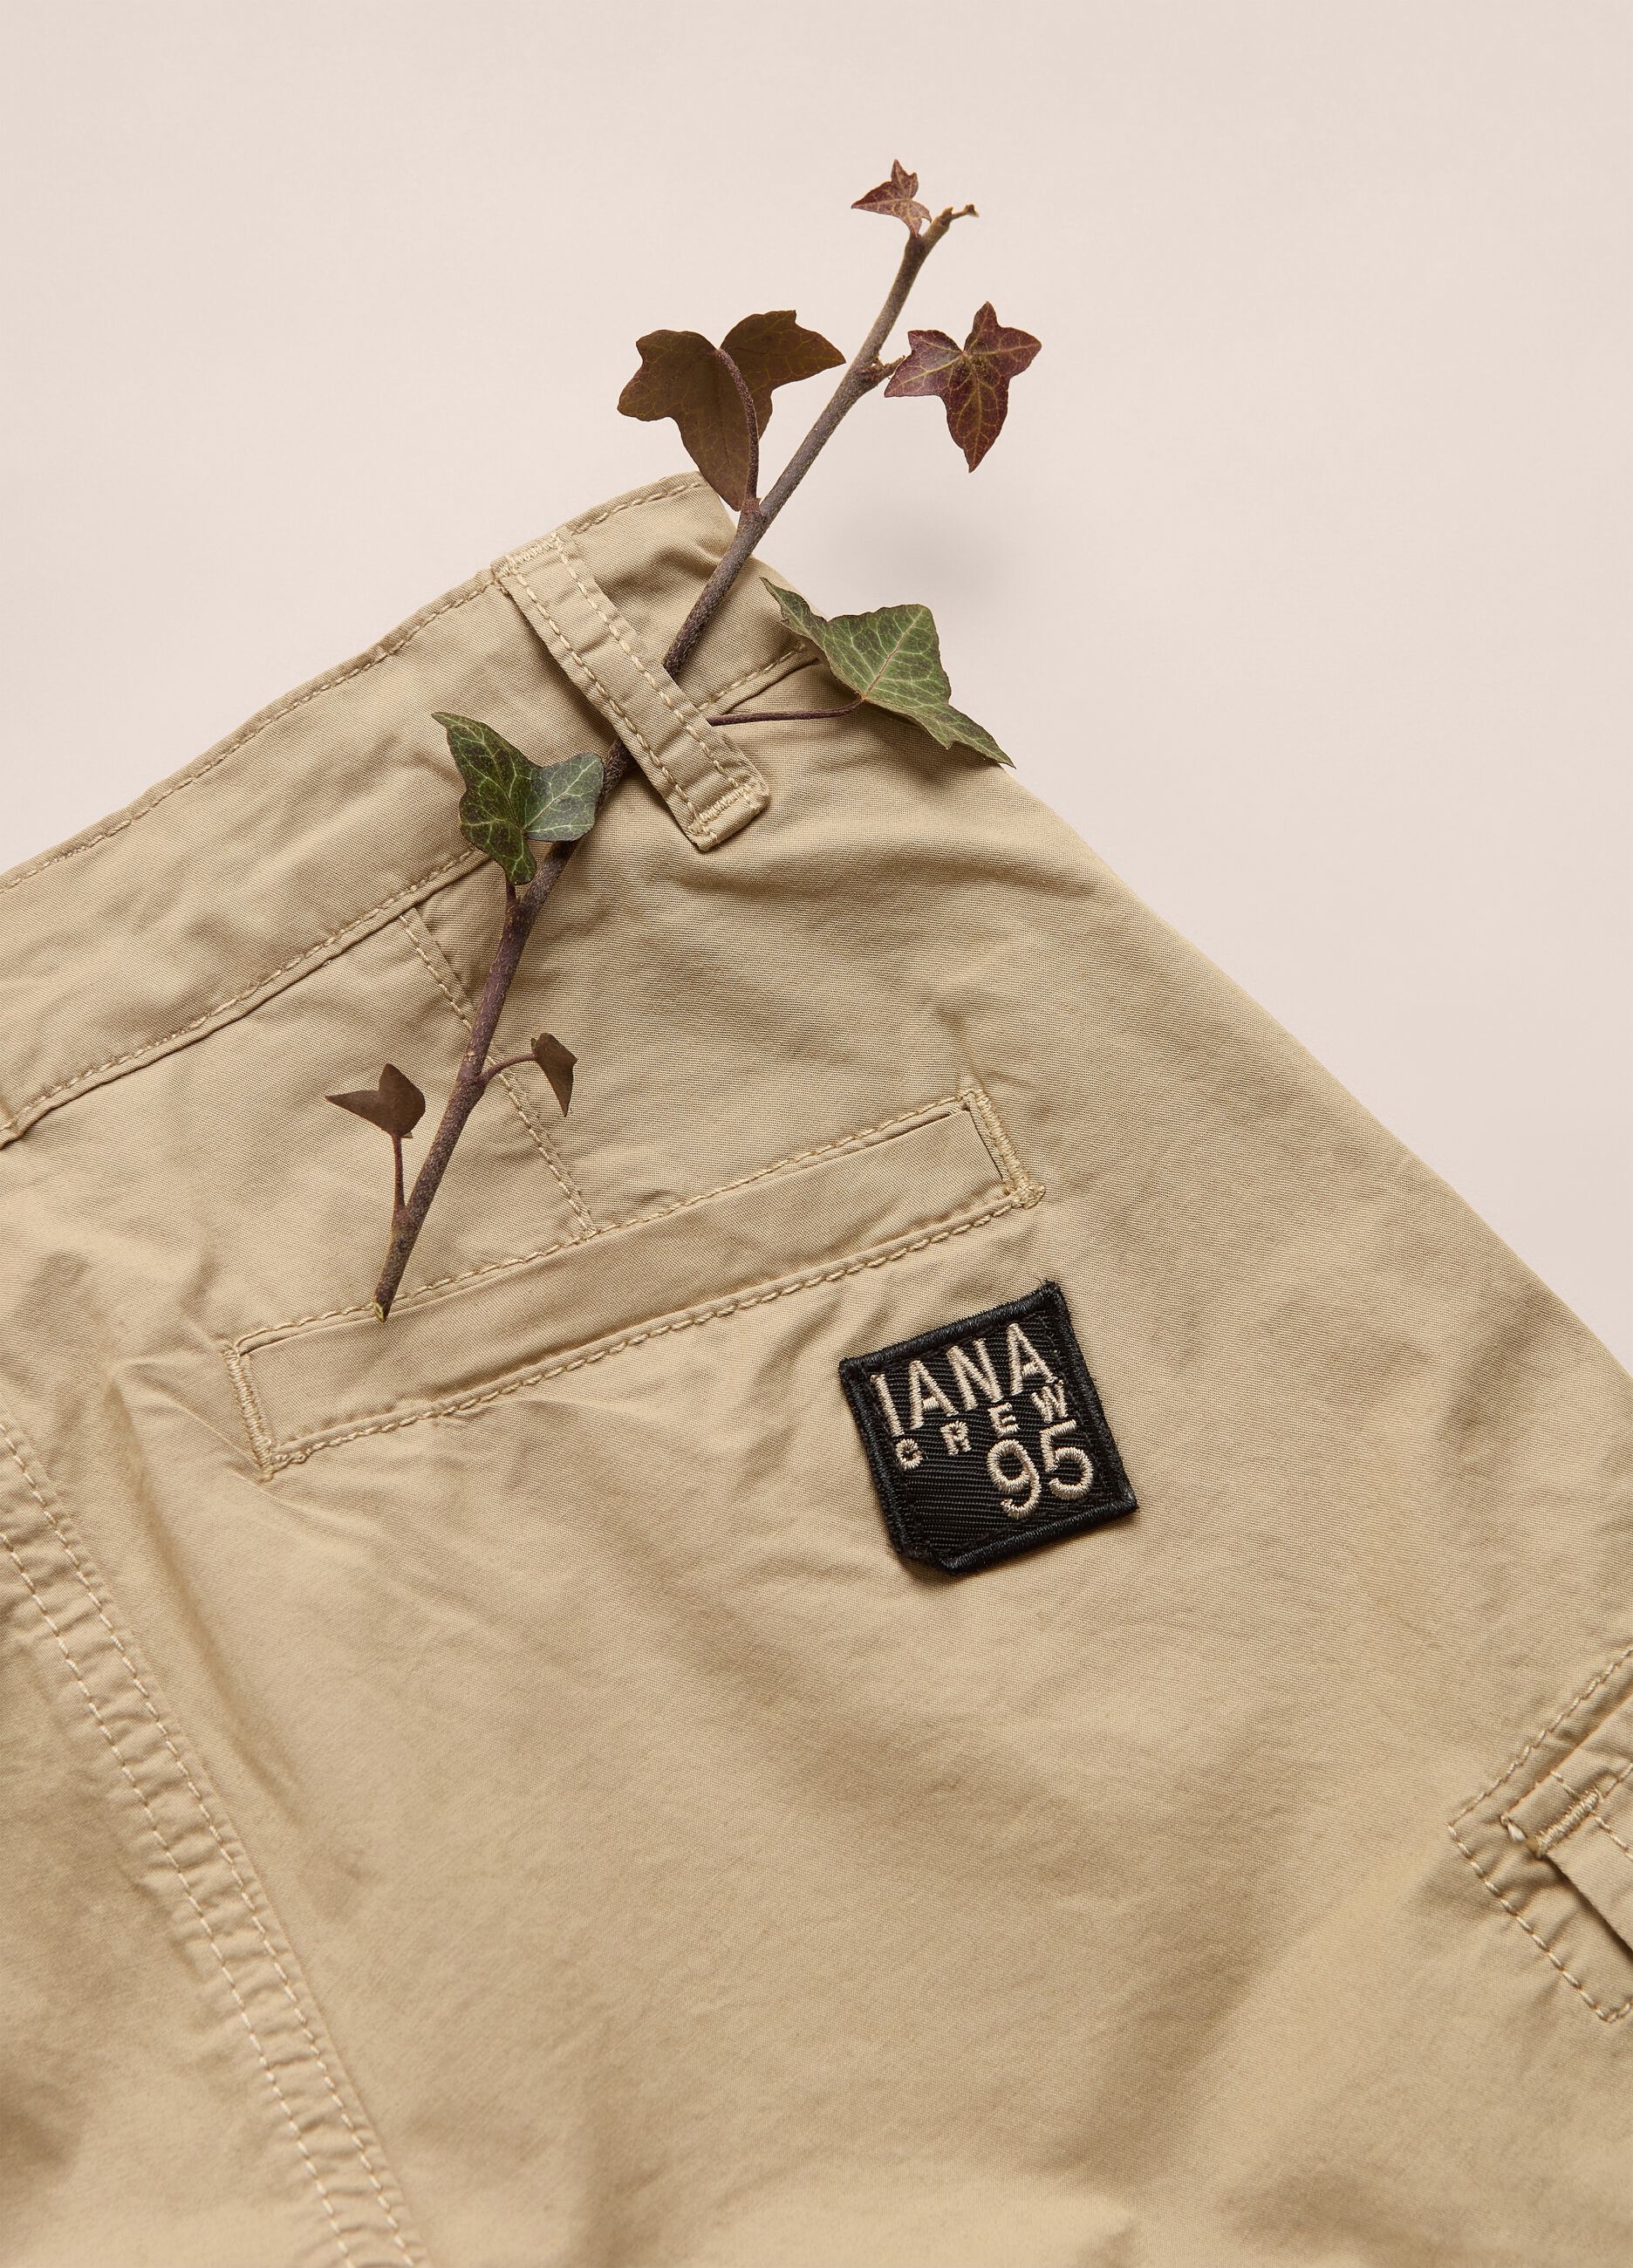 IANA stretch cotton shorts with pockets